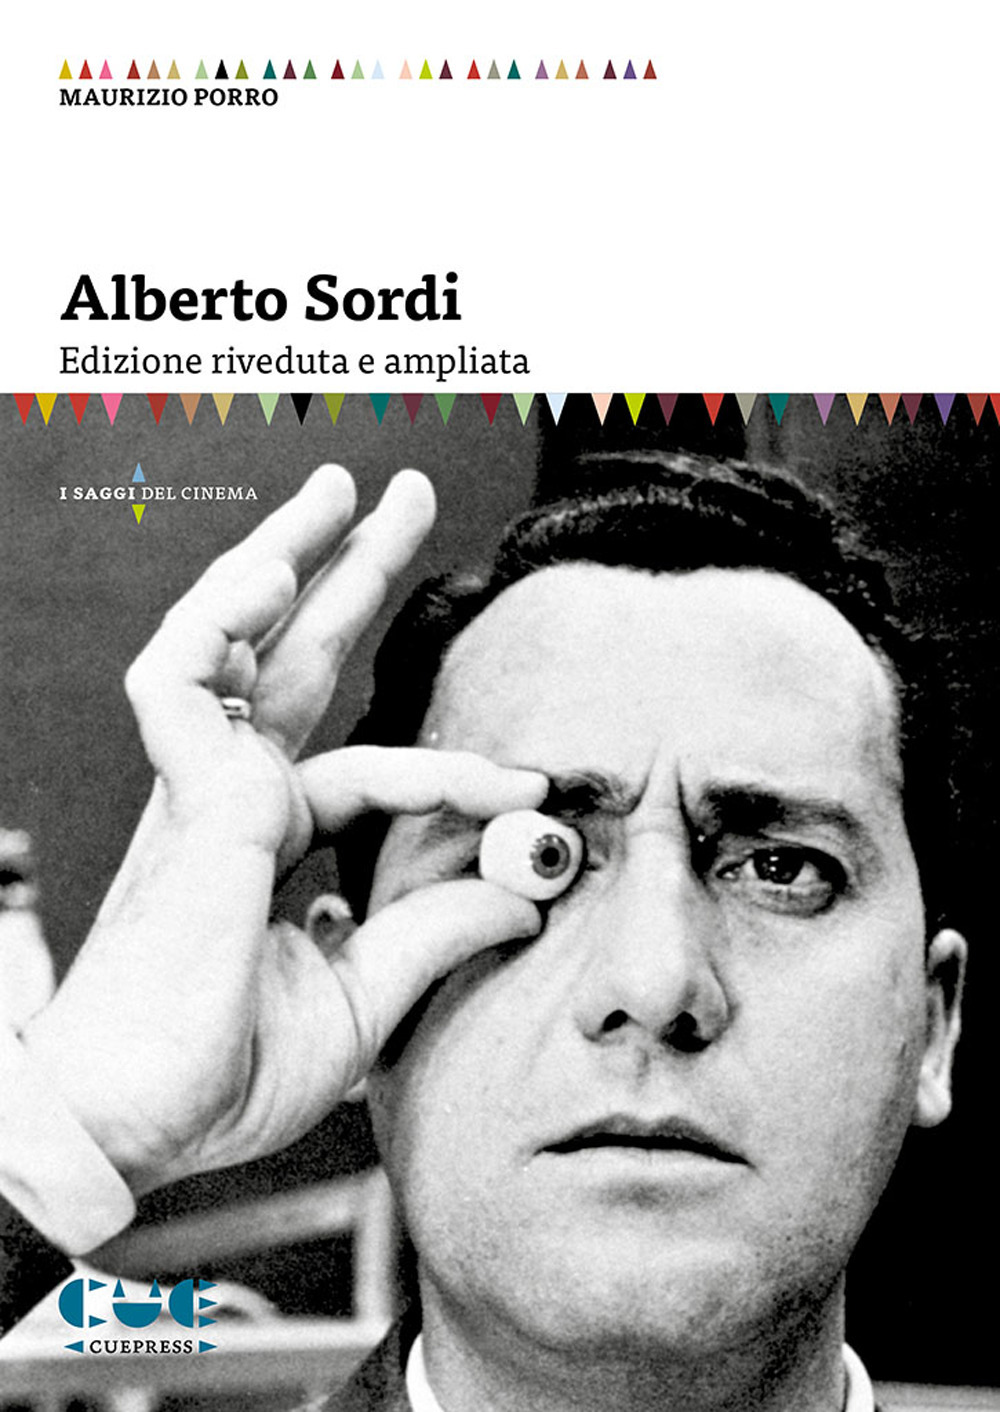 Libri Porro Maurizio - Alberto Sordi NUOVO SIGILLATO, EDIZIONE DEL 09/10/2019 SUBITO DISPONIBILE